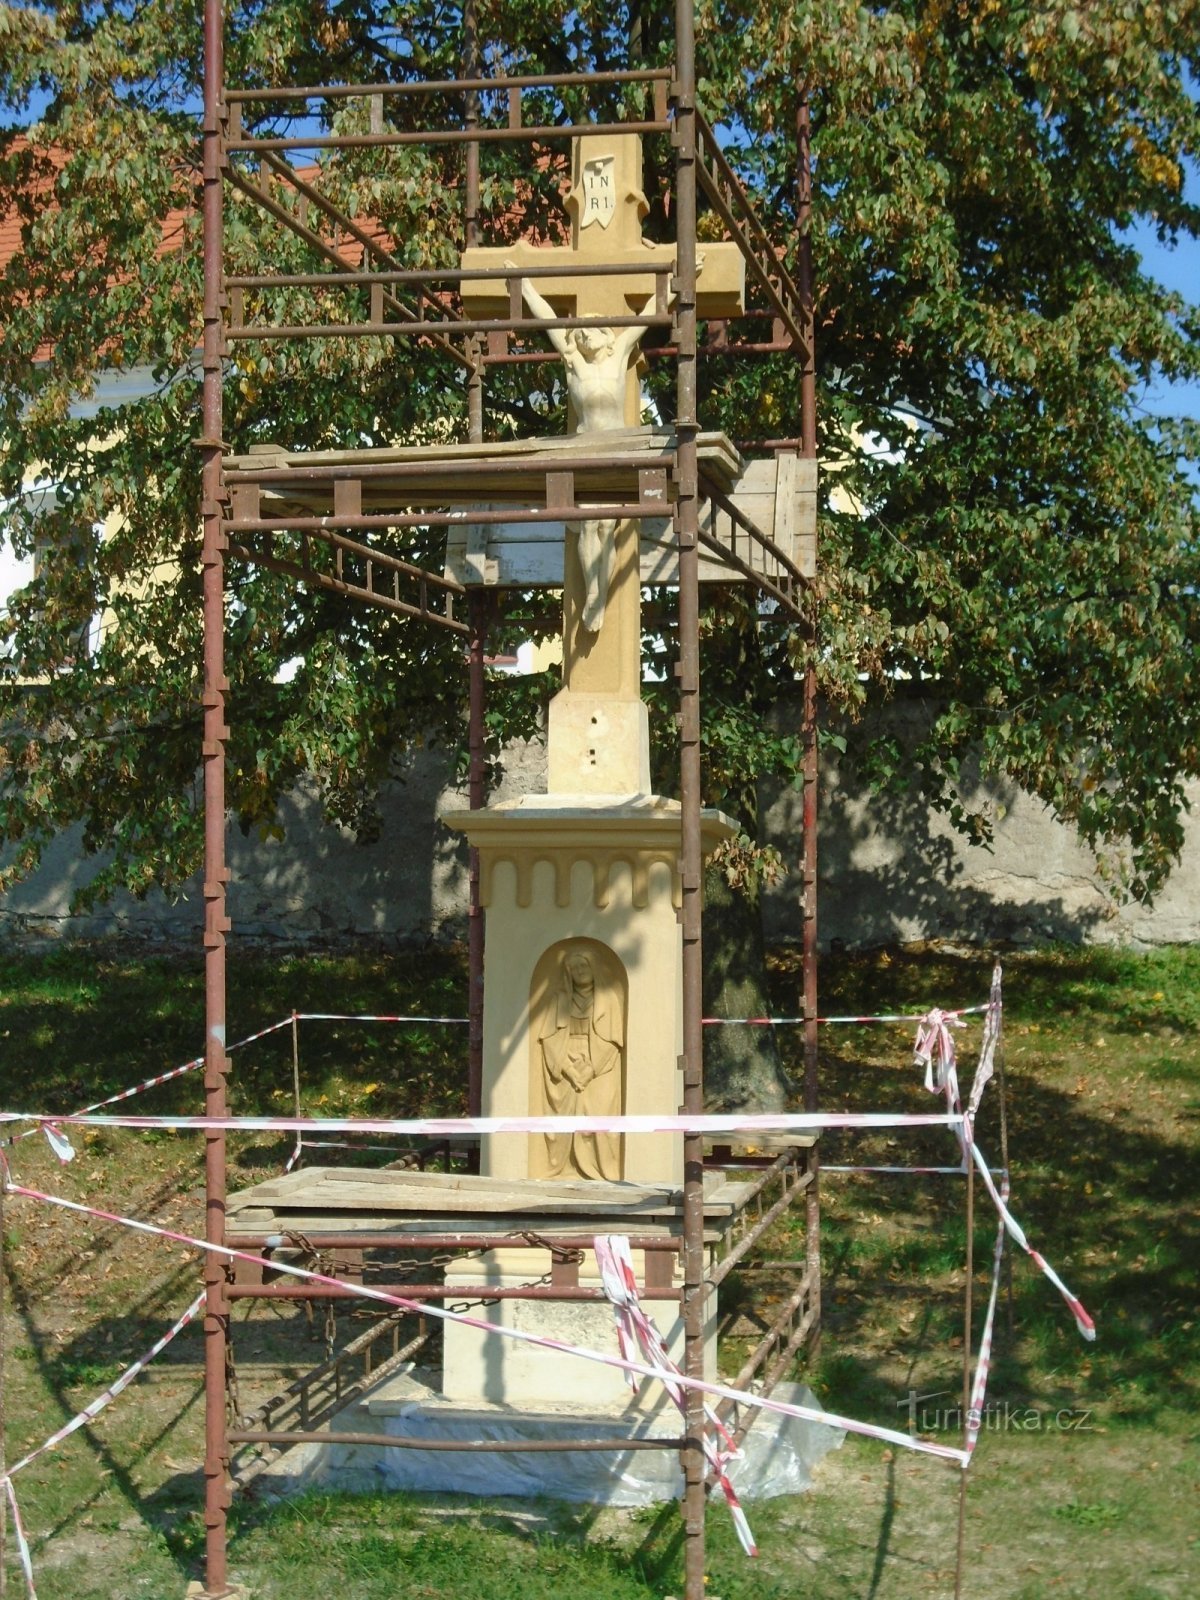 Obnova križa ispred crkve (Býšť)